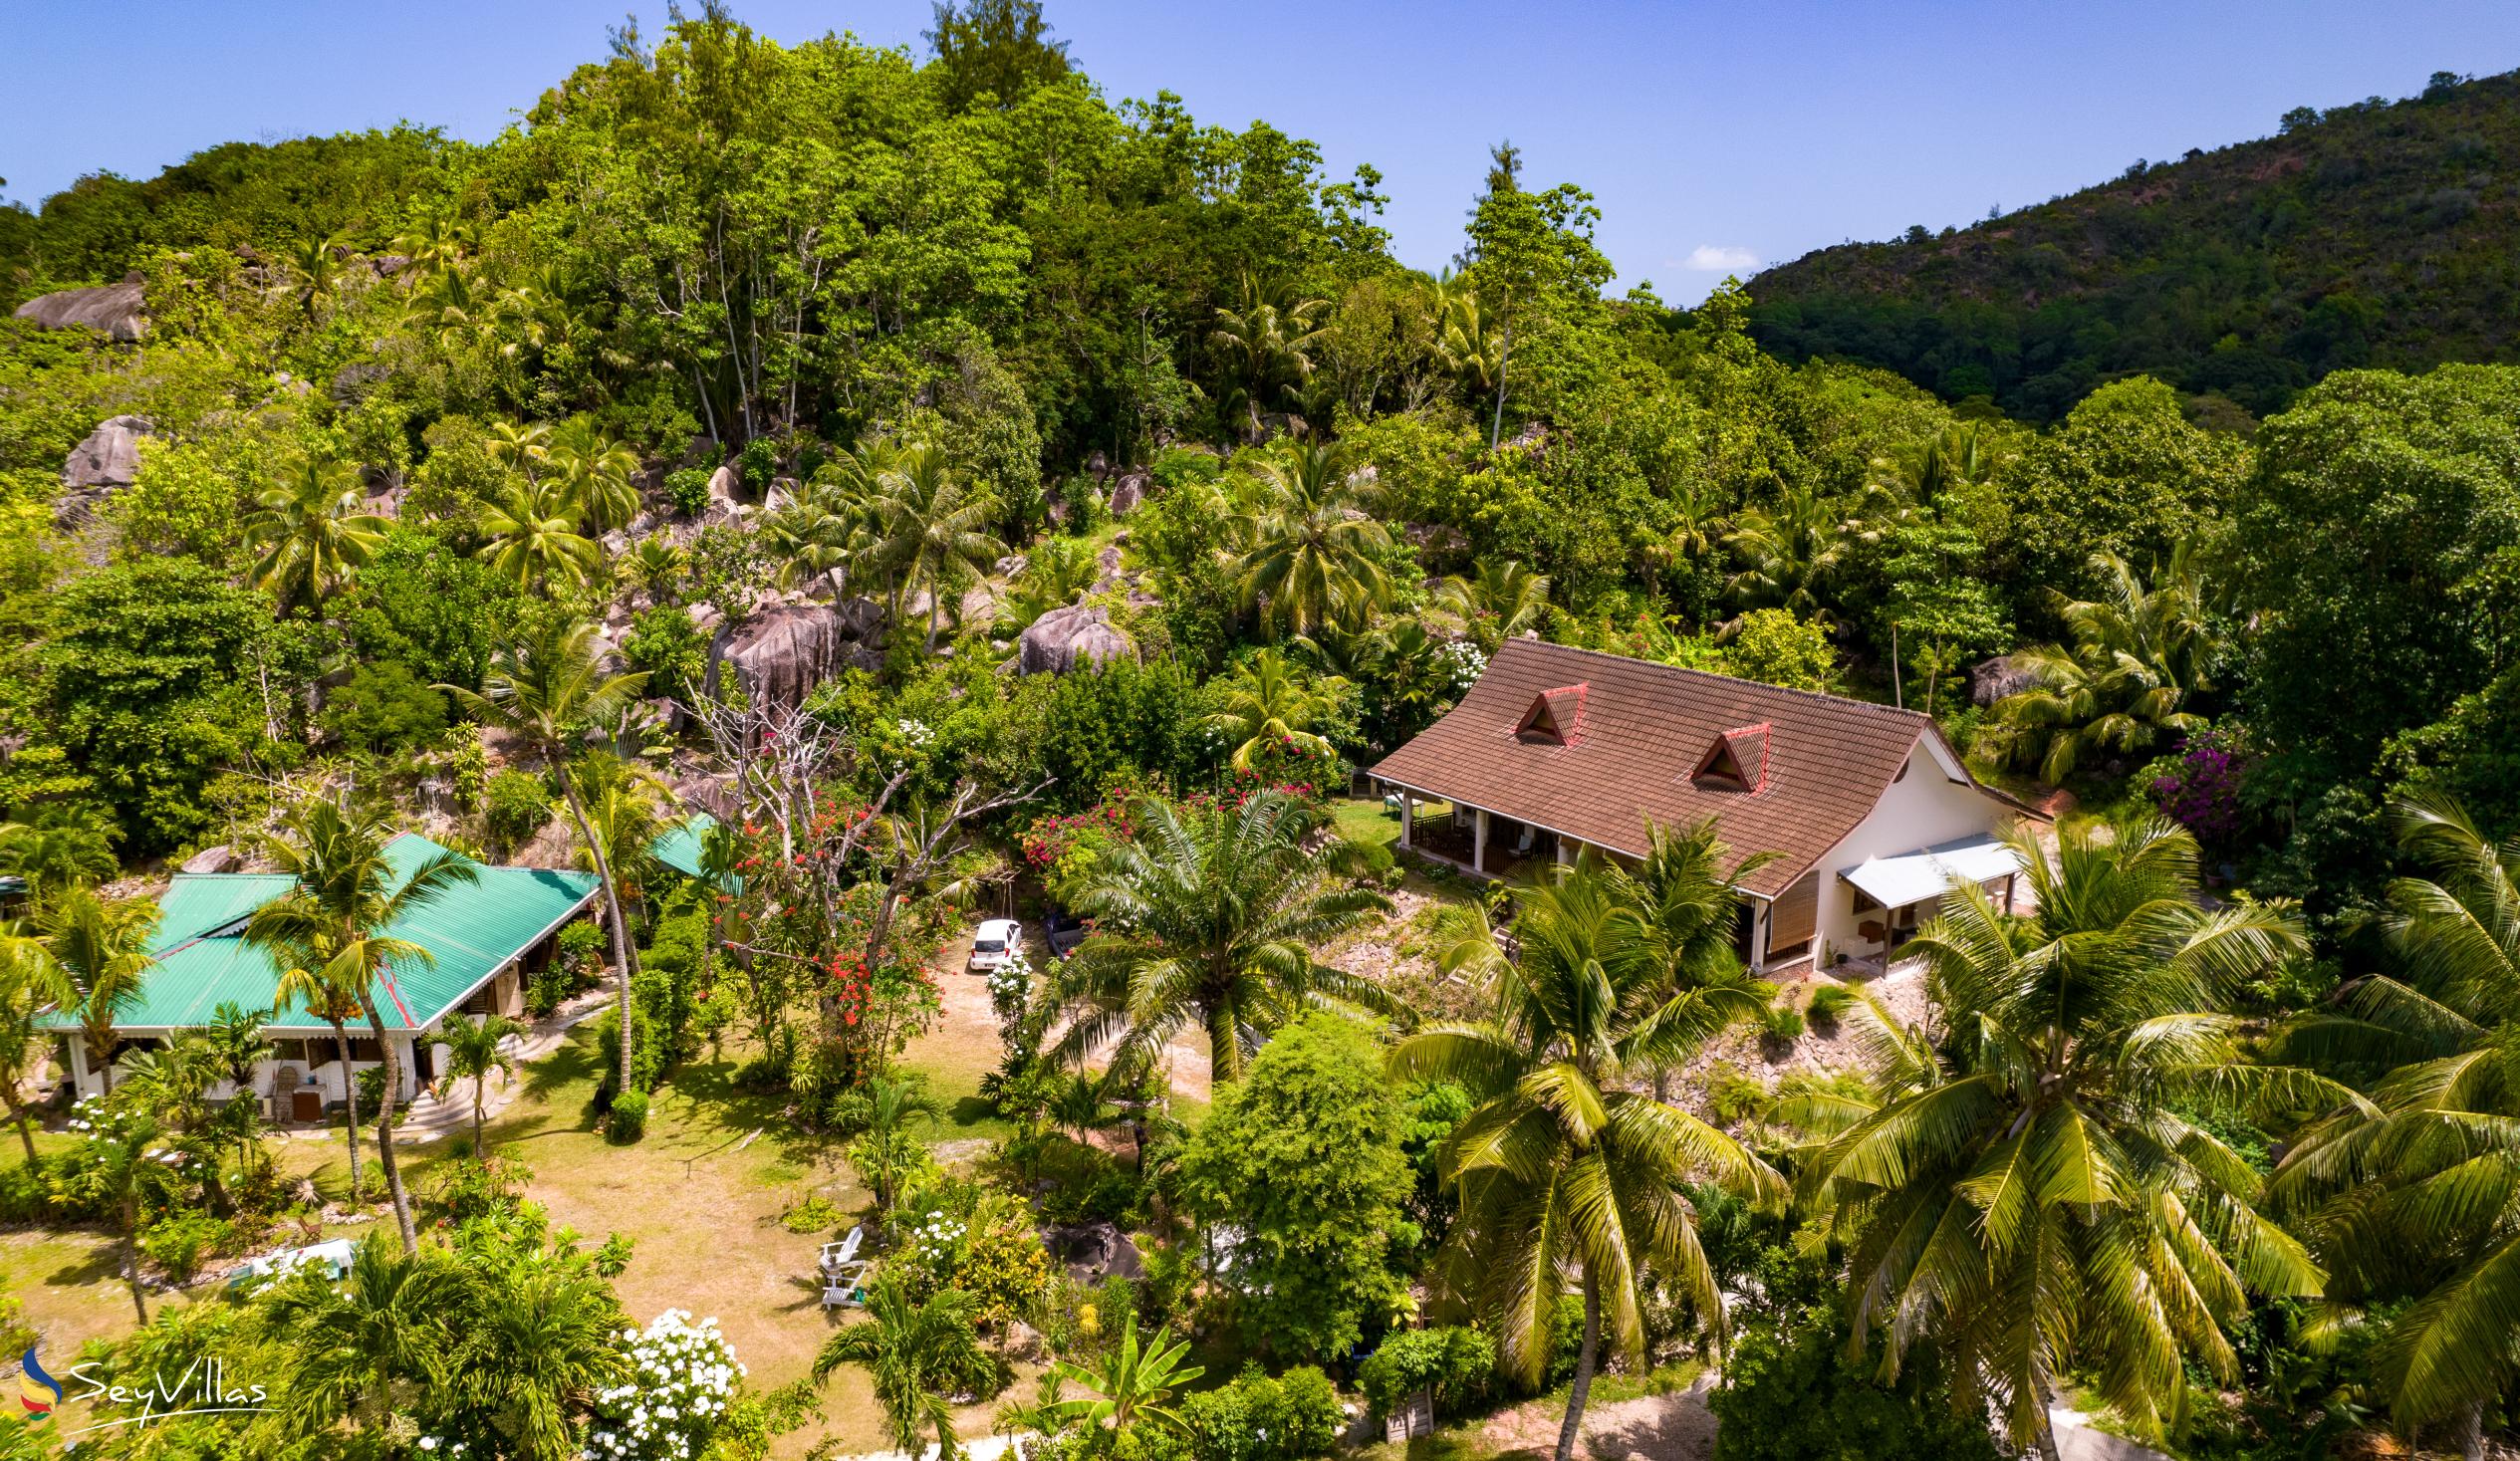 Foto 4: Villas du Voyageur - Aussenbereich - Praslin (Seychellen)